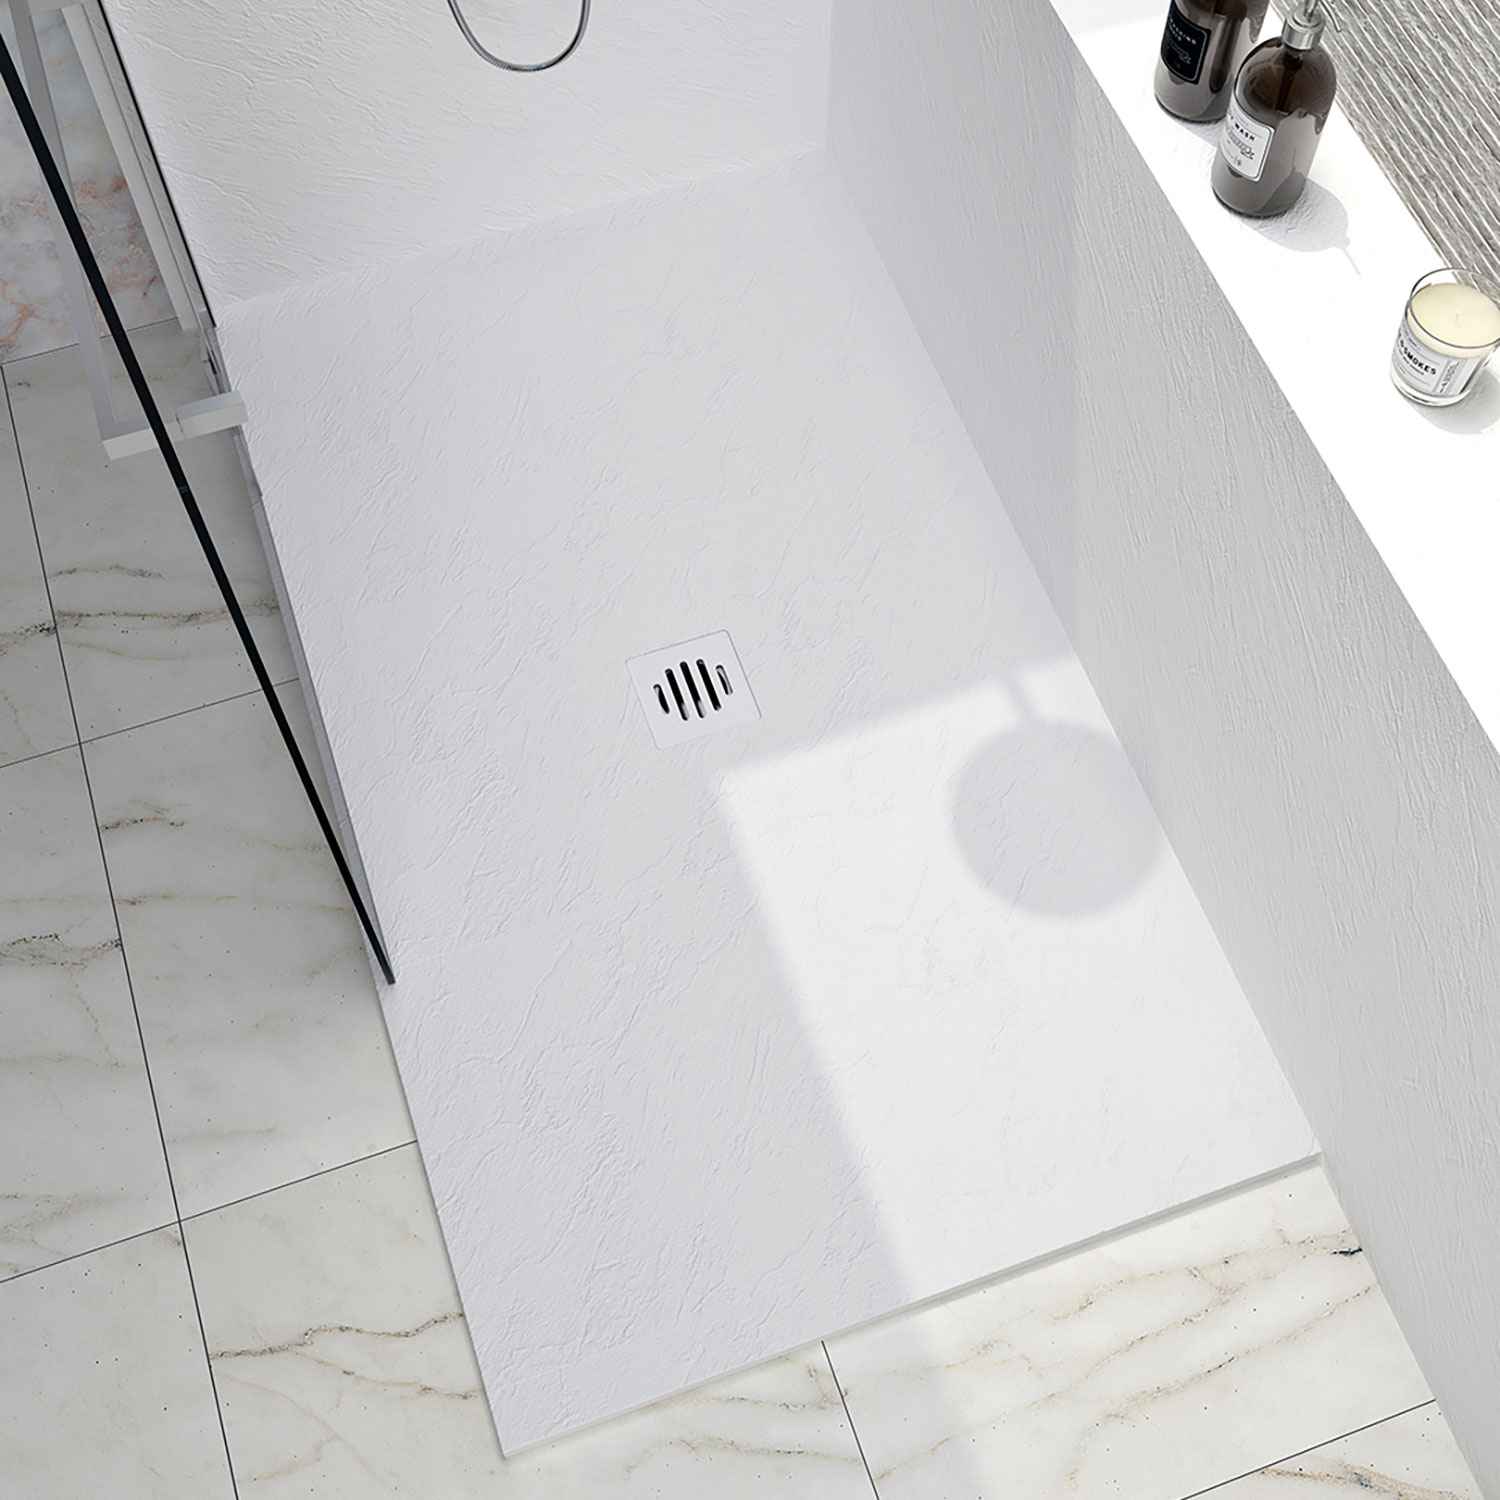 Shower base Slate 60 x 42, custom-made tile flange installation, in white